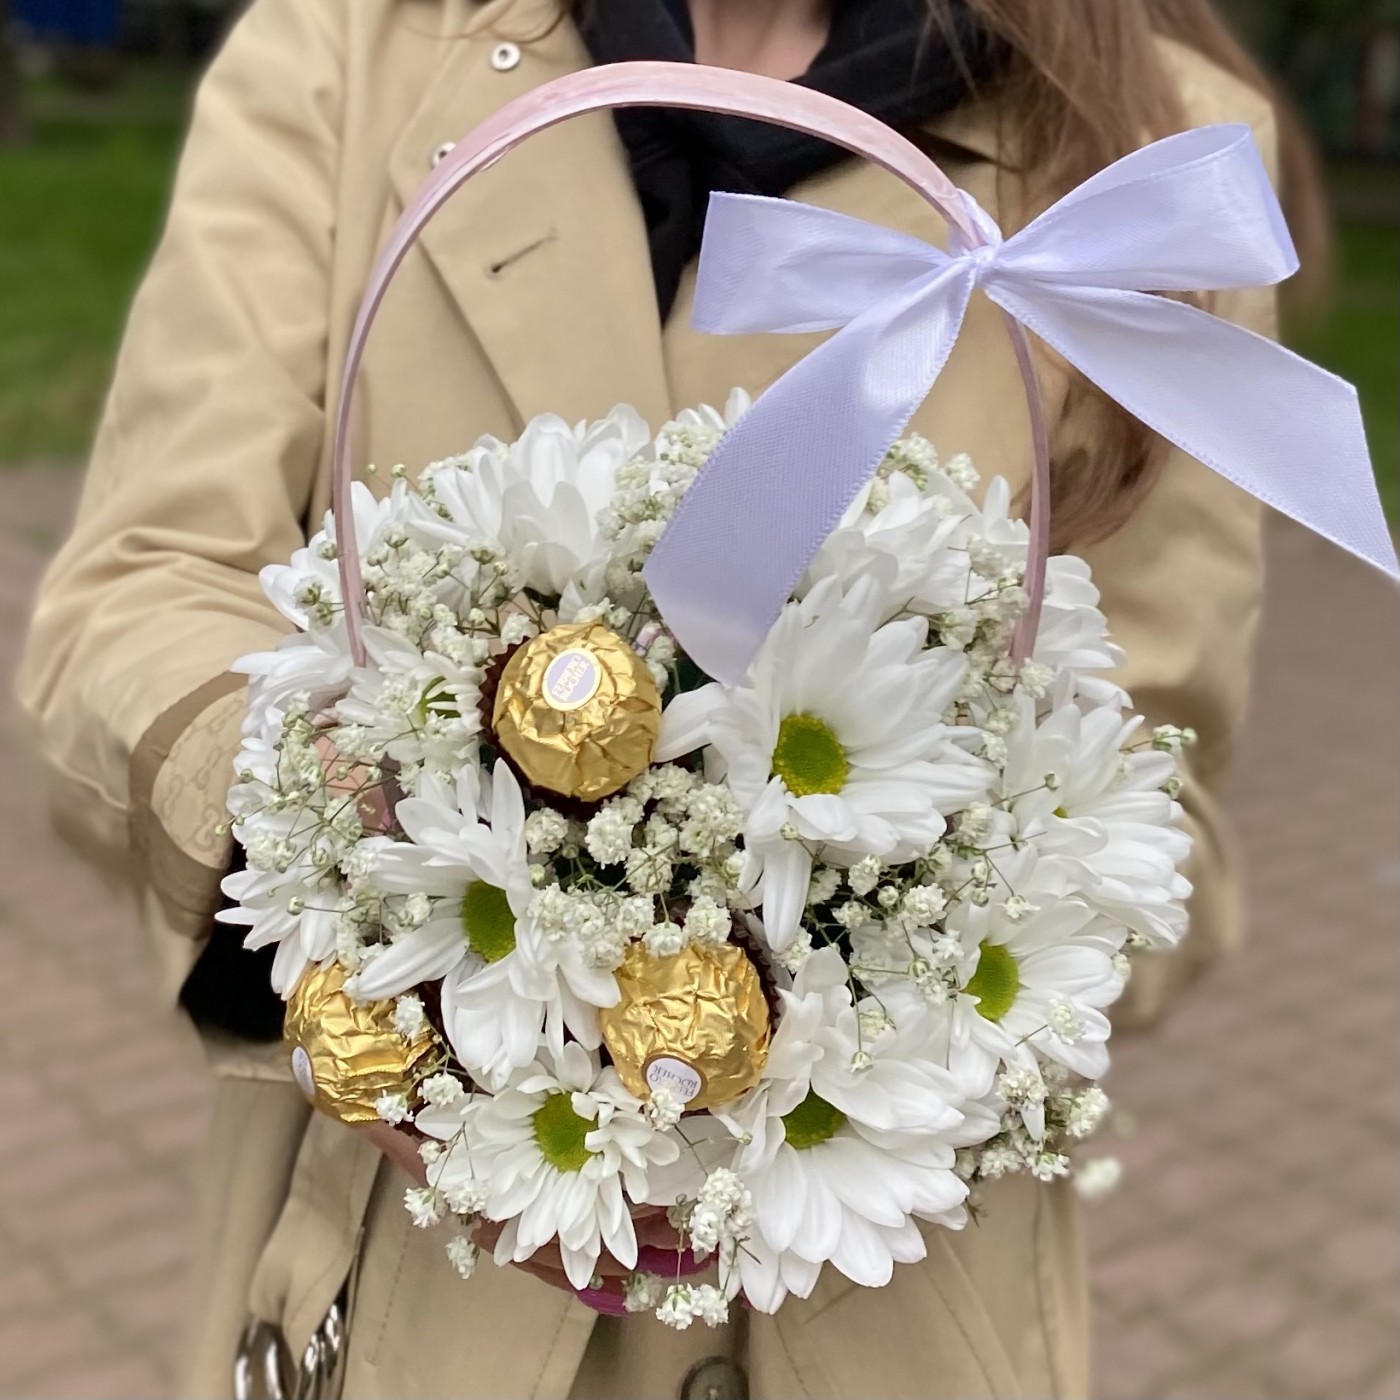 Белая кустовая хризантема Бакарди с конфетами в корзине